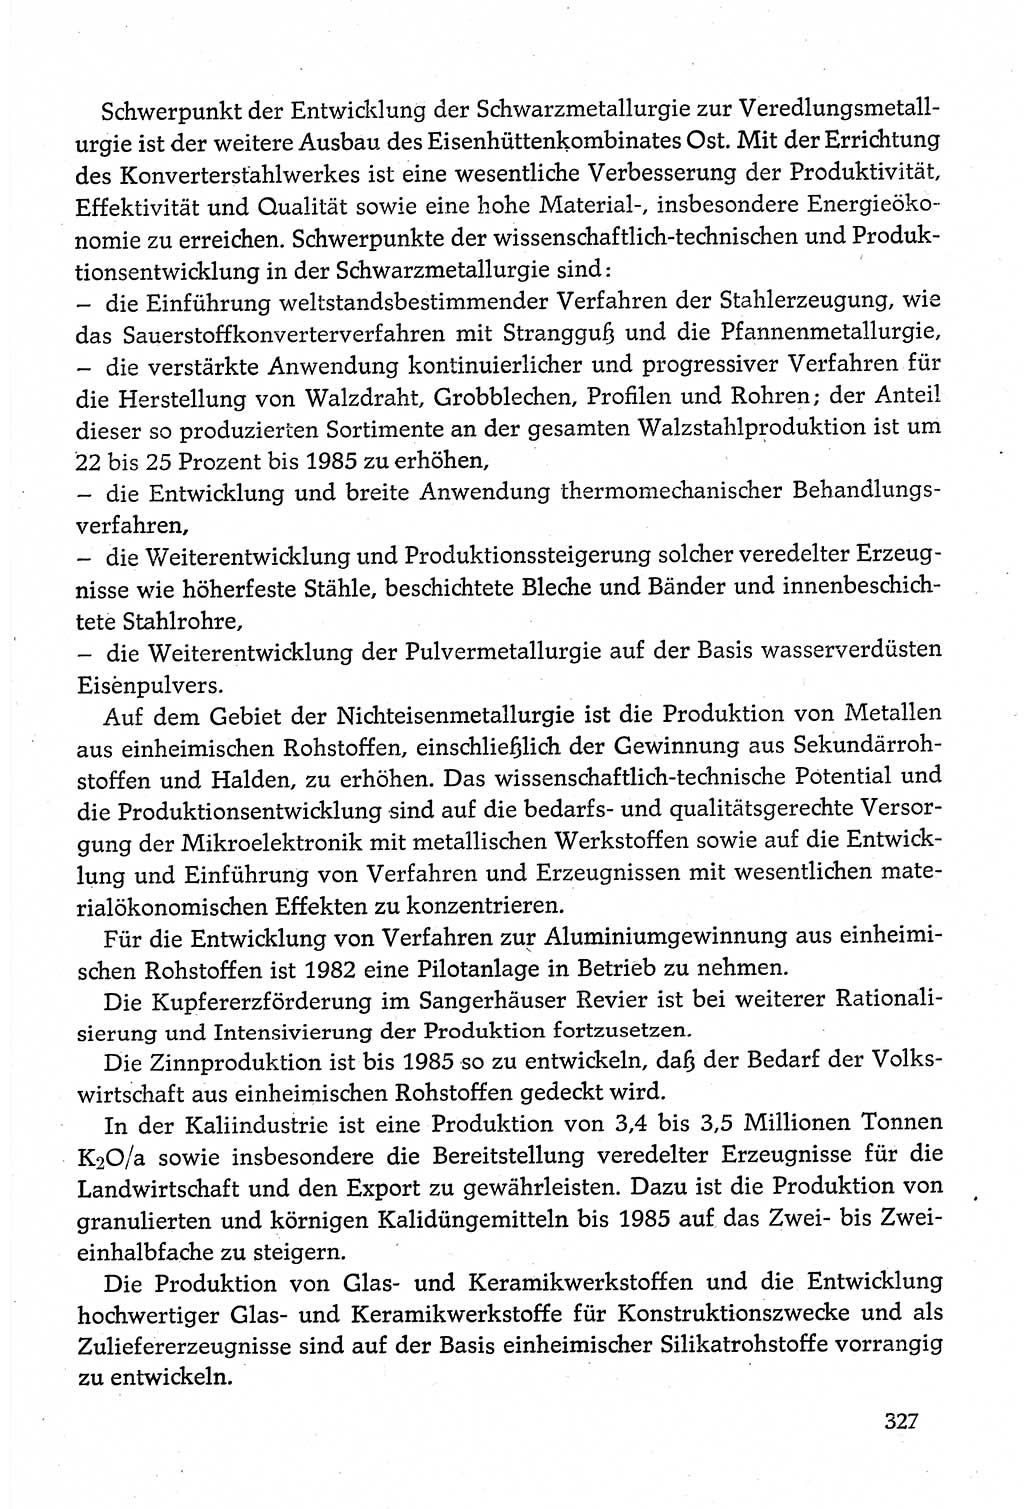 Dokumente der Sozialistischen Einheitspartei Deutschlands (SED) [Deutsche Demokratische Republik (DDR)] 1980-1981, Seite 327 (Dok. SED DDR 1980-1981, S. 327)